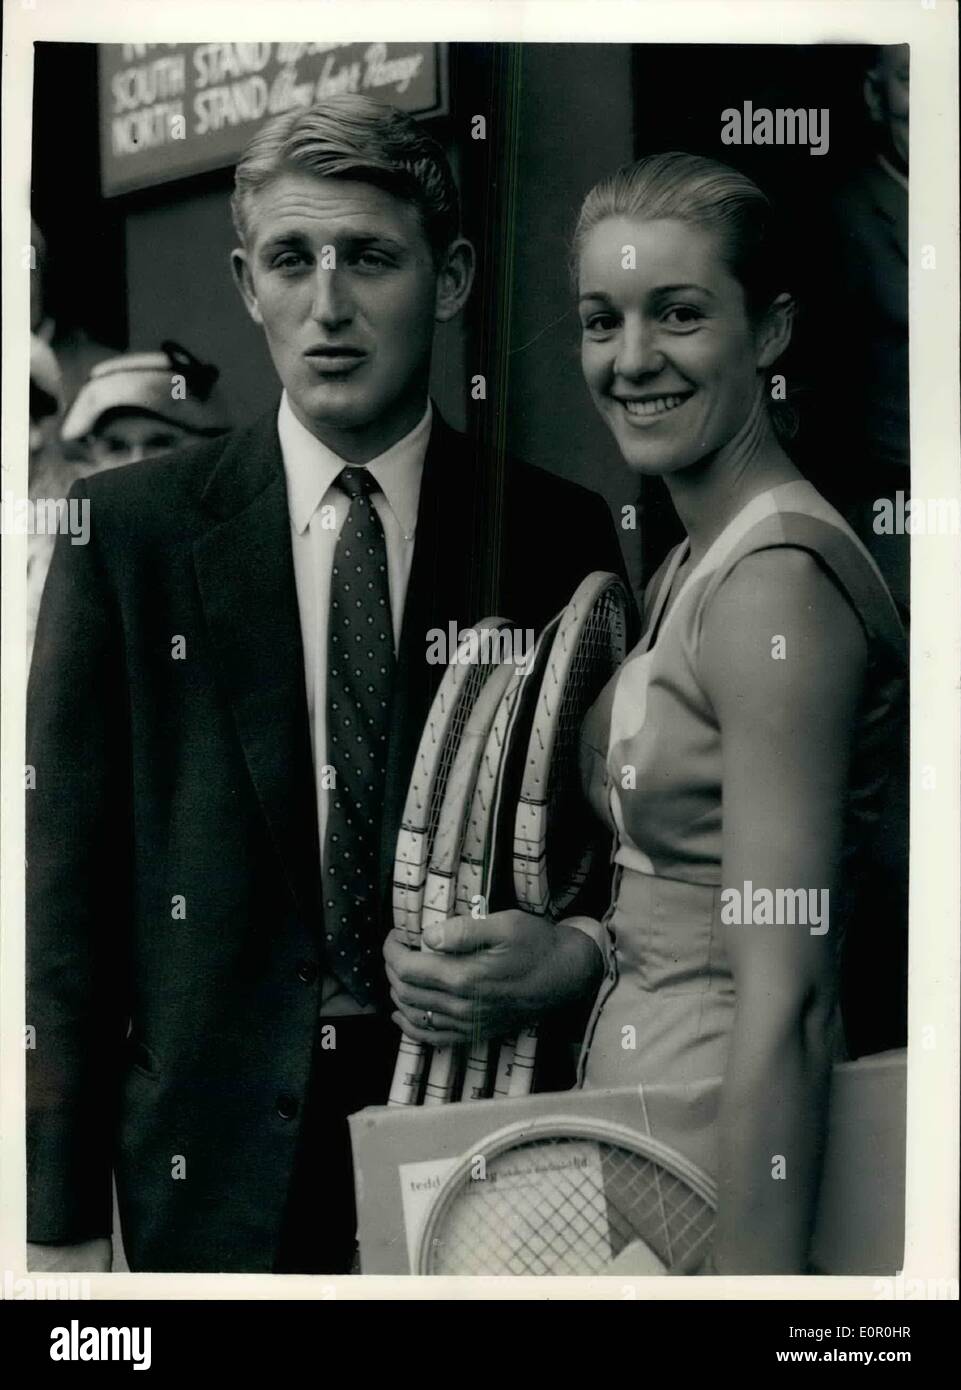 6. Juni 1957 - erster Tag des Wimbledon-Turniers. Lew Hoad und seine Frau kommen.: Fotoshows Weltmeister Lew Hoad Australiens - und seine Frau Jennifer zur Eröffnung des Wimbledon-Turniers heute ankommen. Frau Hoad tragen eine Outfit in blau - gelb und rosa Bettwäsche. Stockfoto